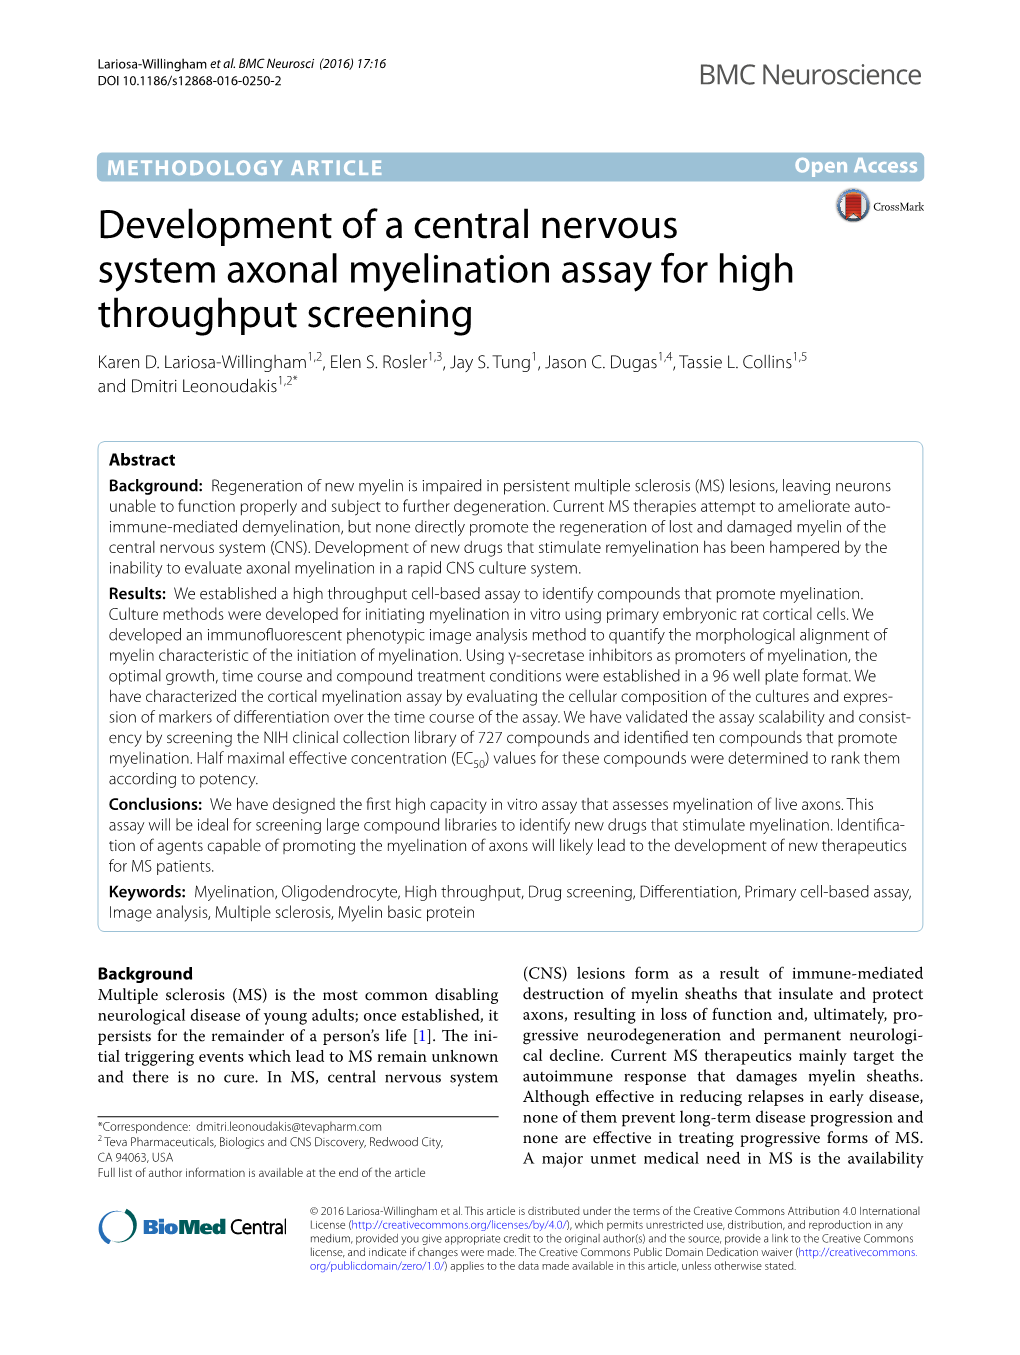 Development of a Central Nervous System Axonal Myelination Assay for High Throughput Screening Karen D